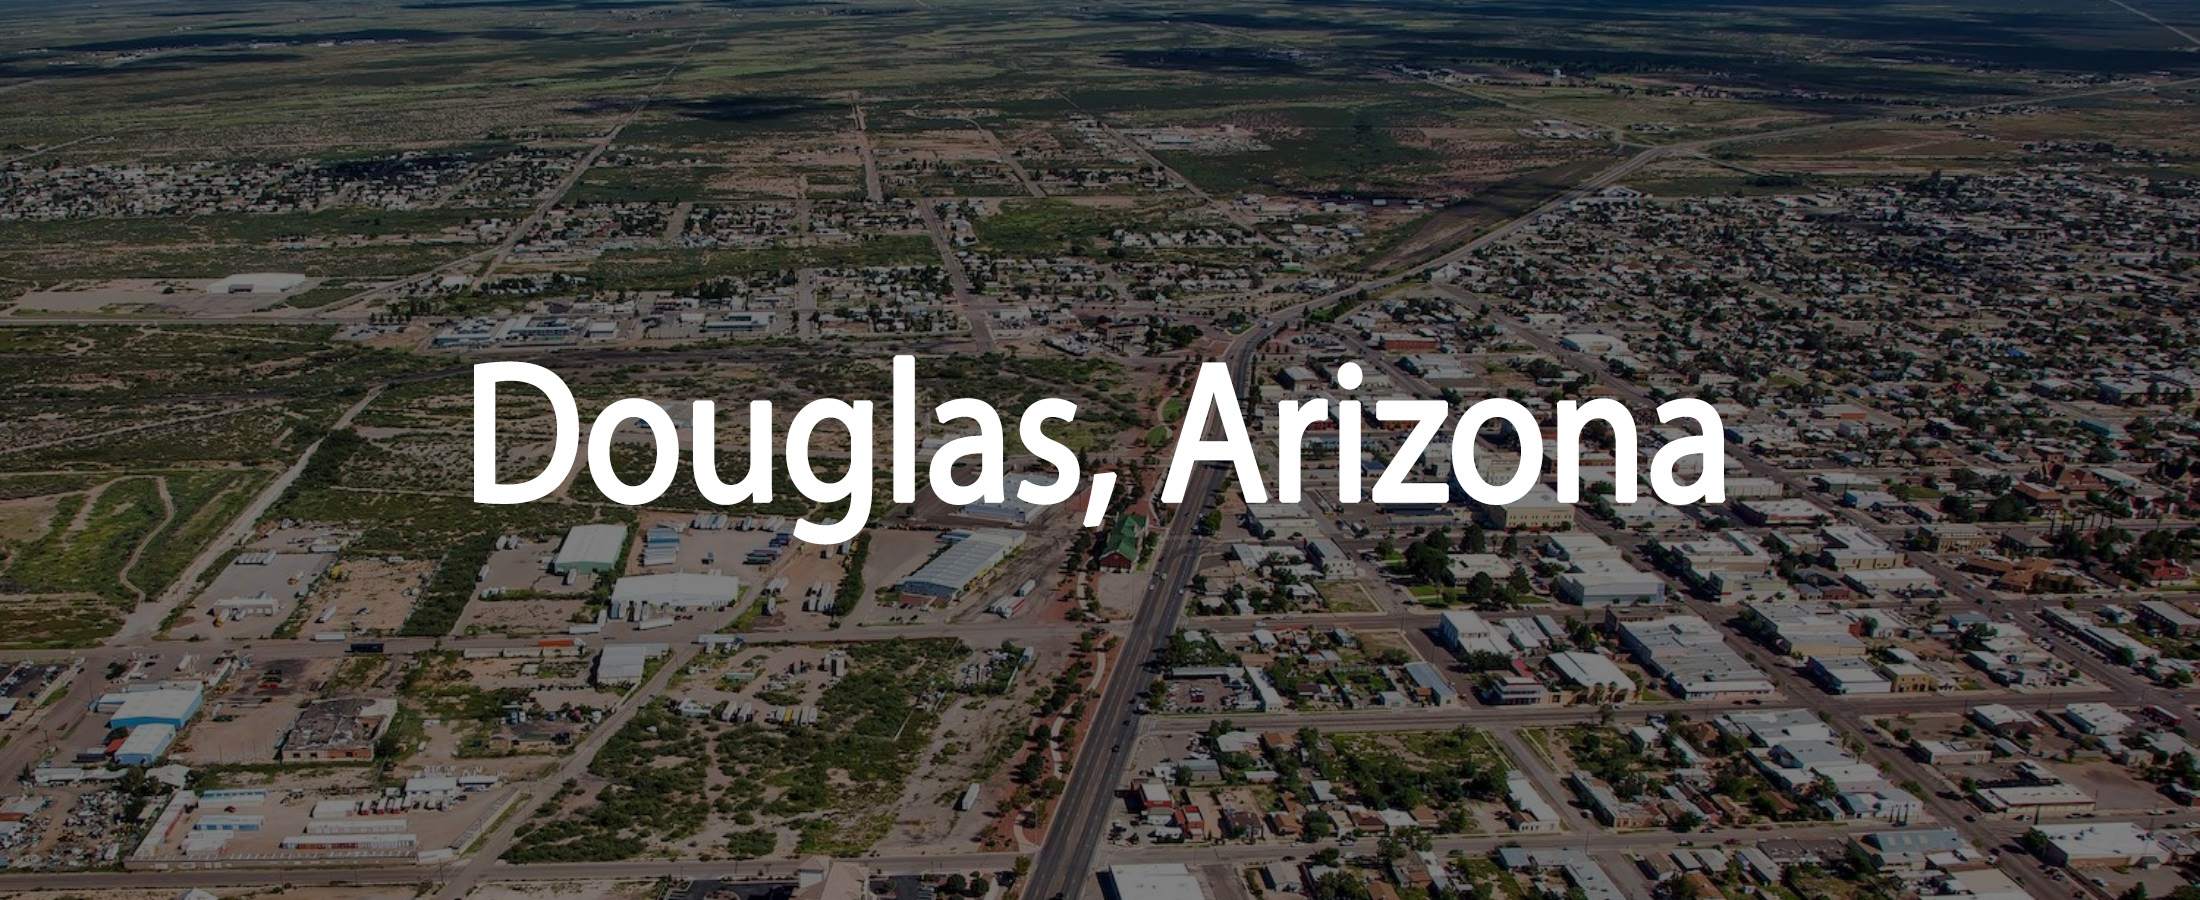 Douglas, Arizona: A Cultural Crossroads in the Borderland